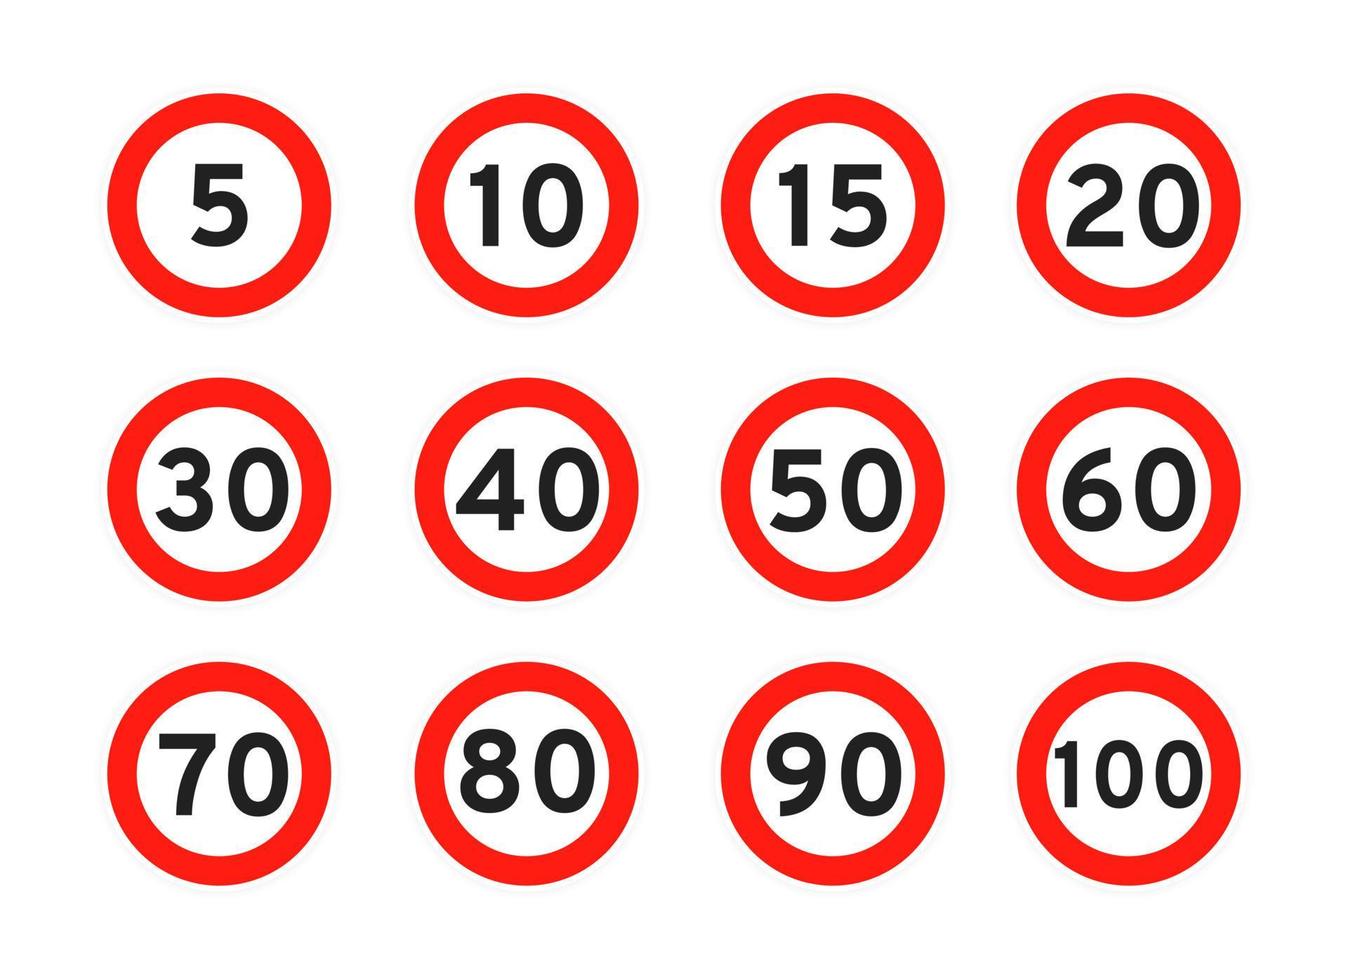 límite de velocidad 5, 10, 15, 20, 30, 40, 50, 60, 70, 80, 90, 100 icono de tráfico de carretera redondo signo estilo plano diseño vector ilustración conjunto.